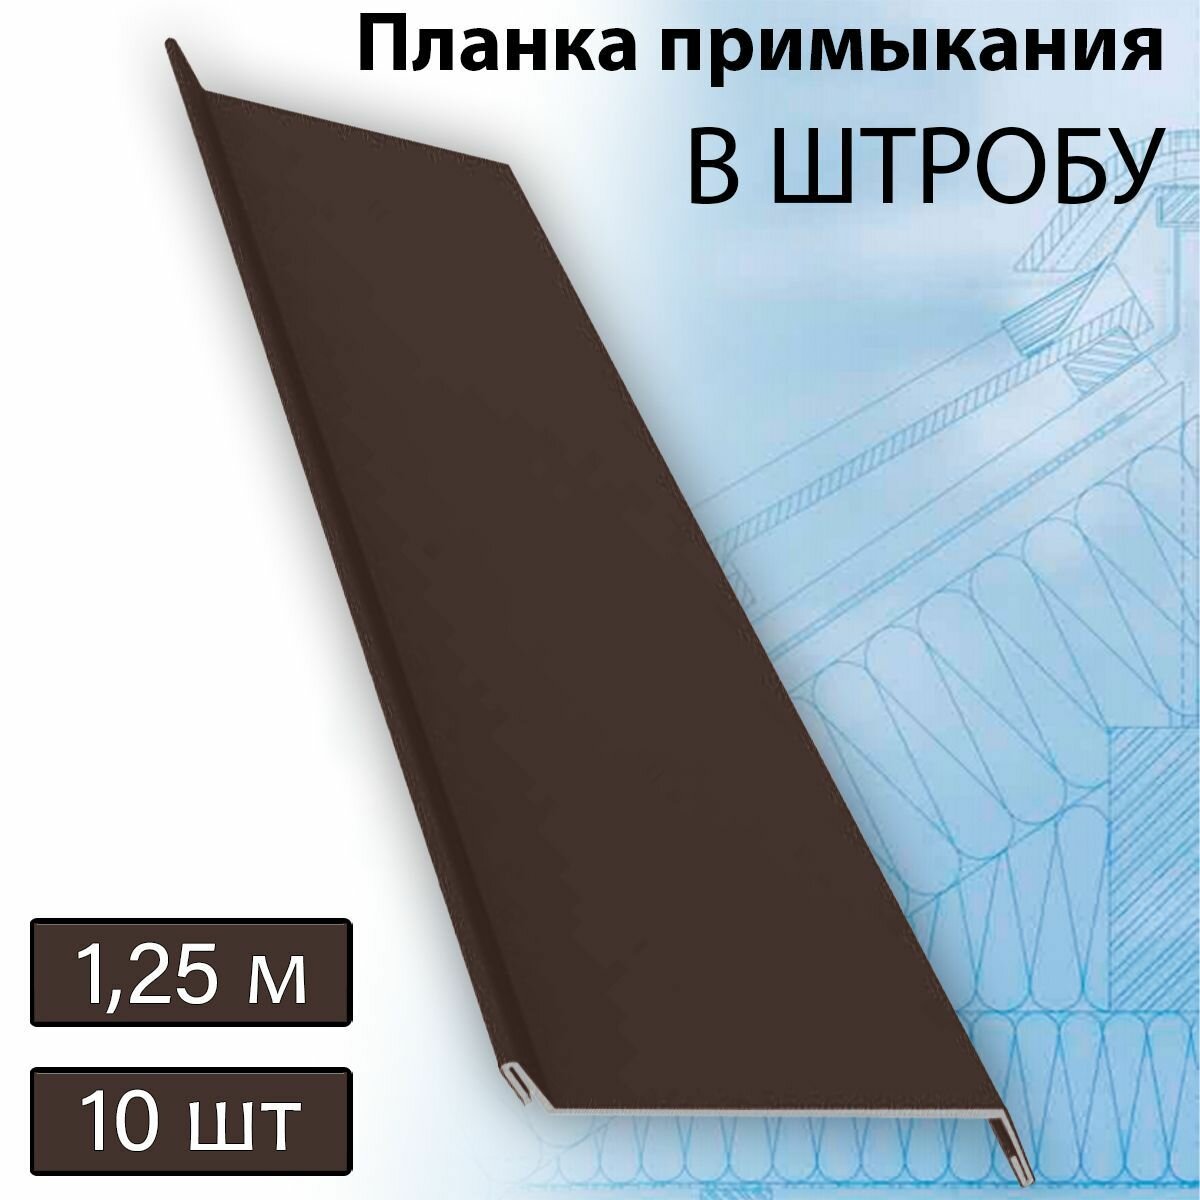 Планка примыкания в штробу 60 мм, 10 штук (RAL 8017) 1,25 м коричневый - фотография № 1